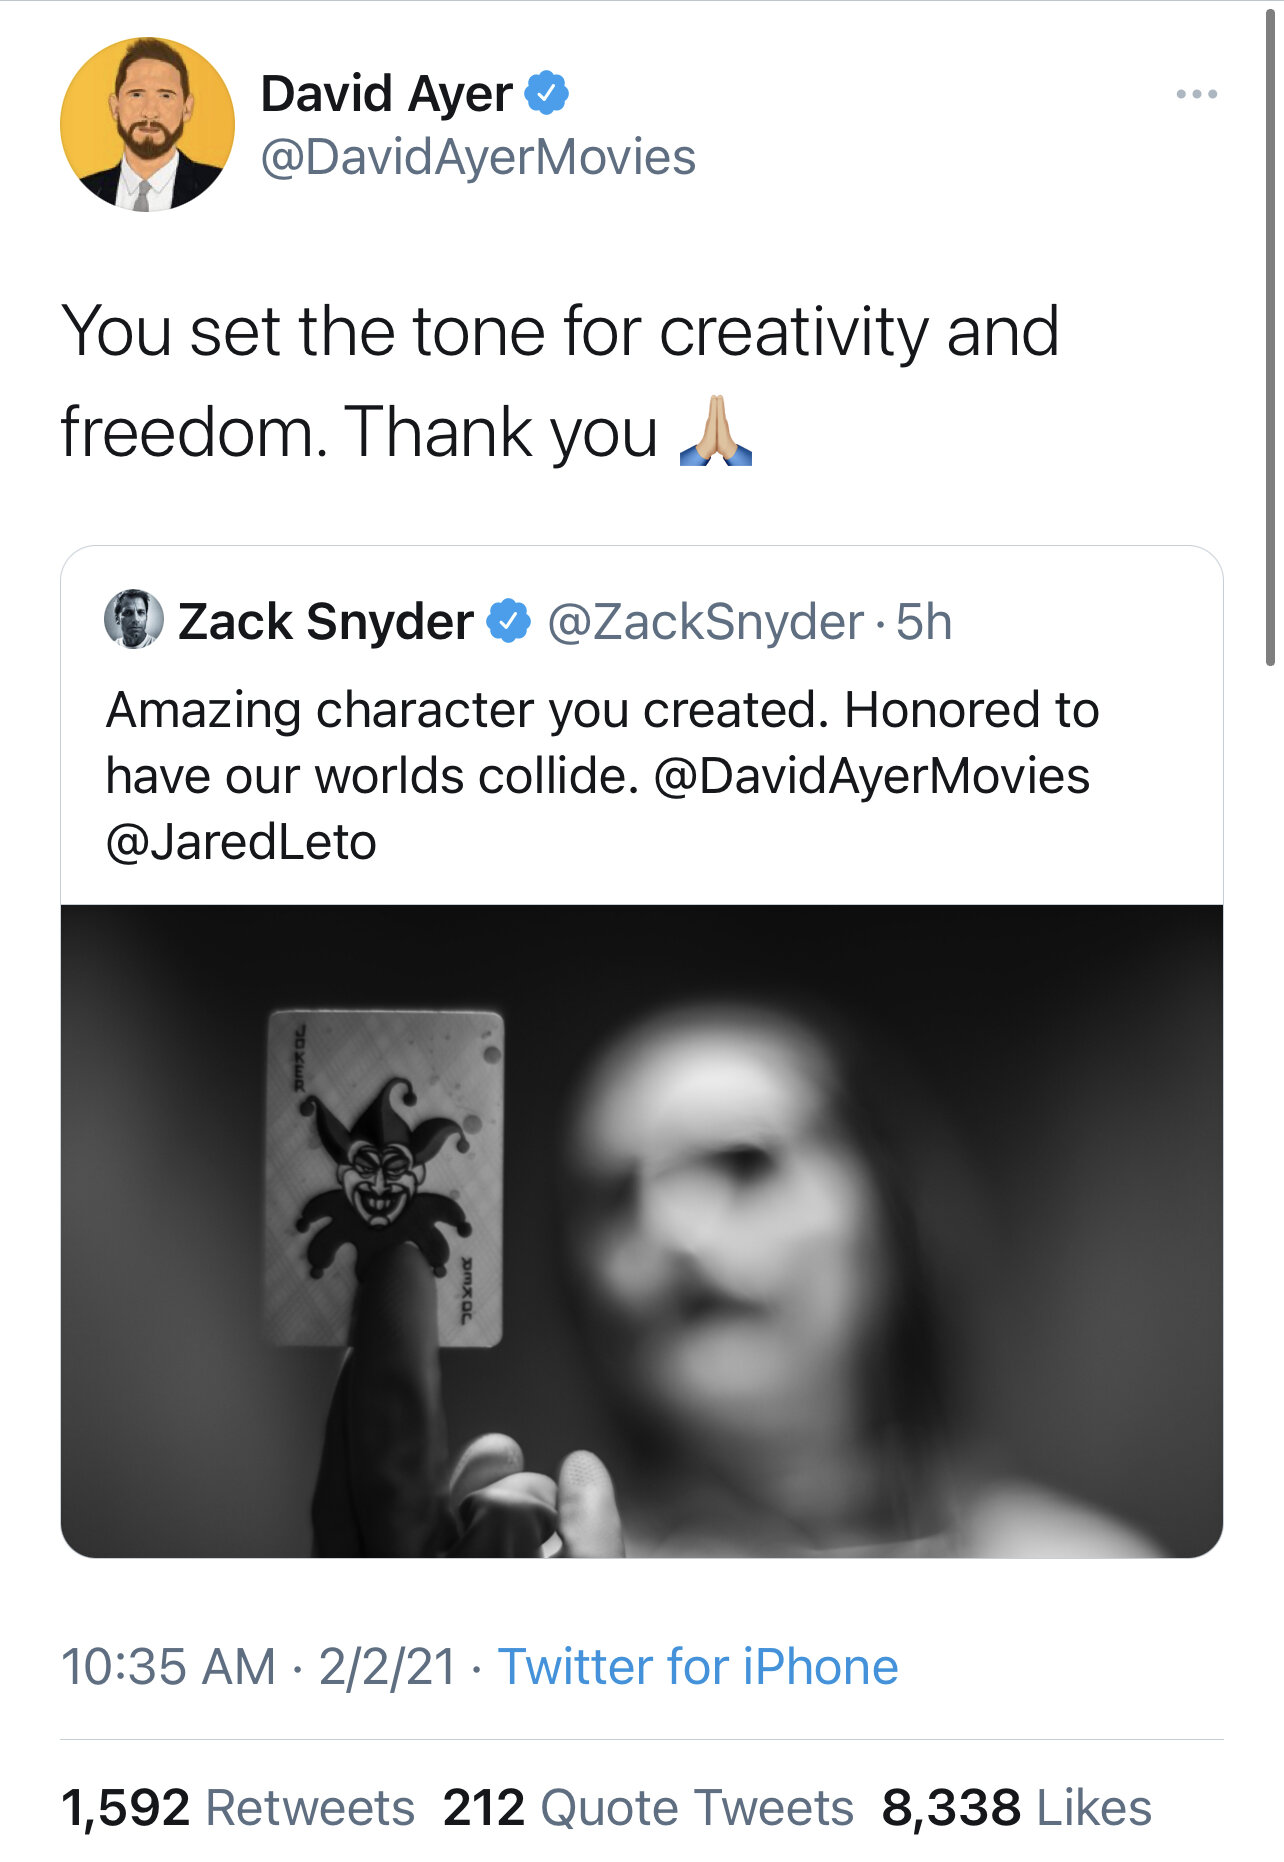 David Ayer (Suicide Squad) retweets Snyder